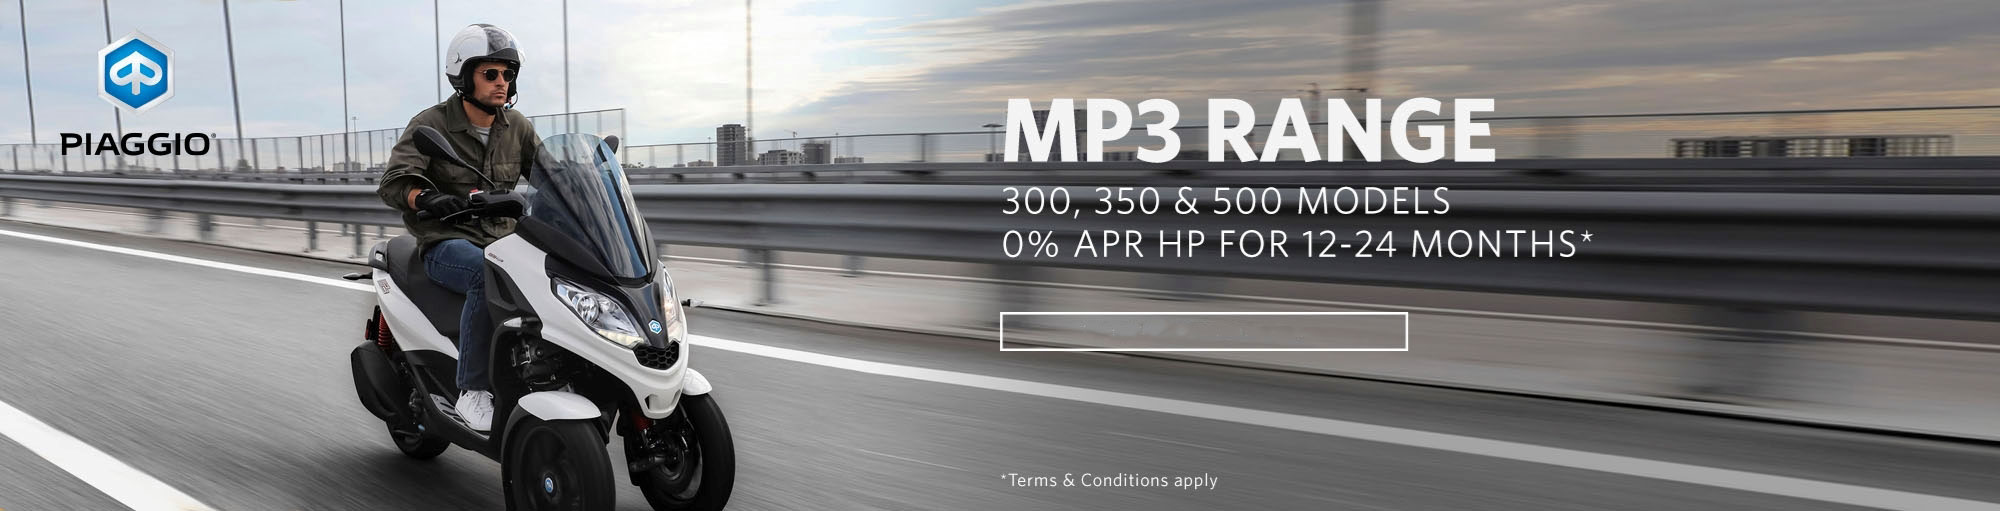 Piaggio MP3 range 0pc APR Offer